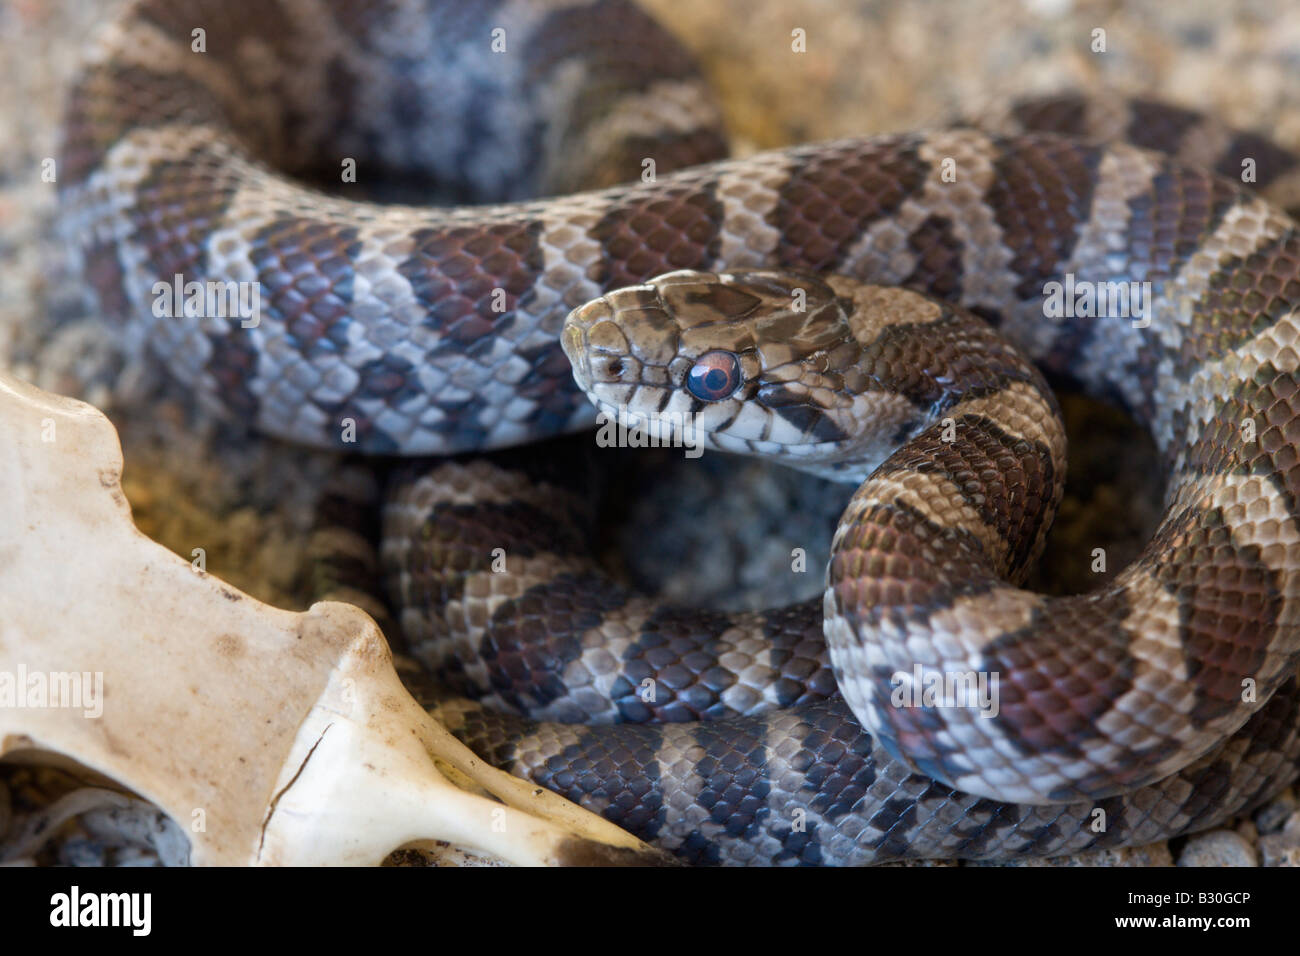 Reptile snake serpent de sang-froid Banque D'Images